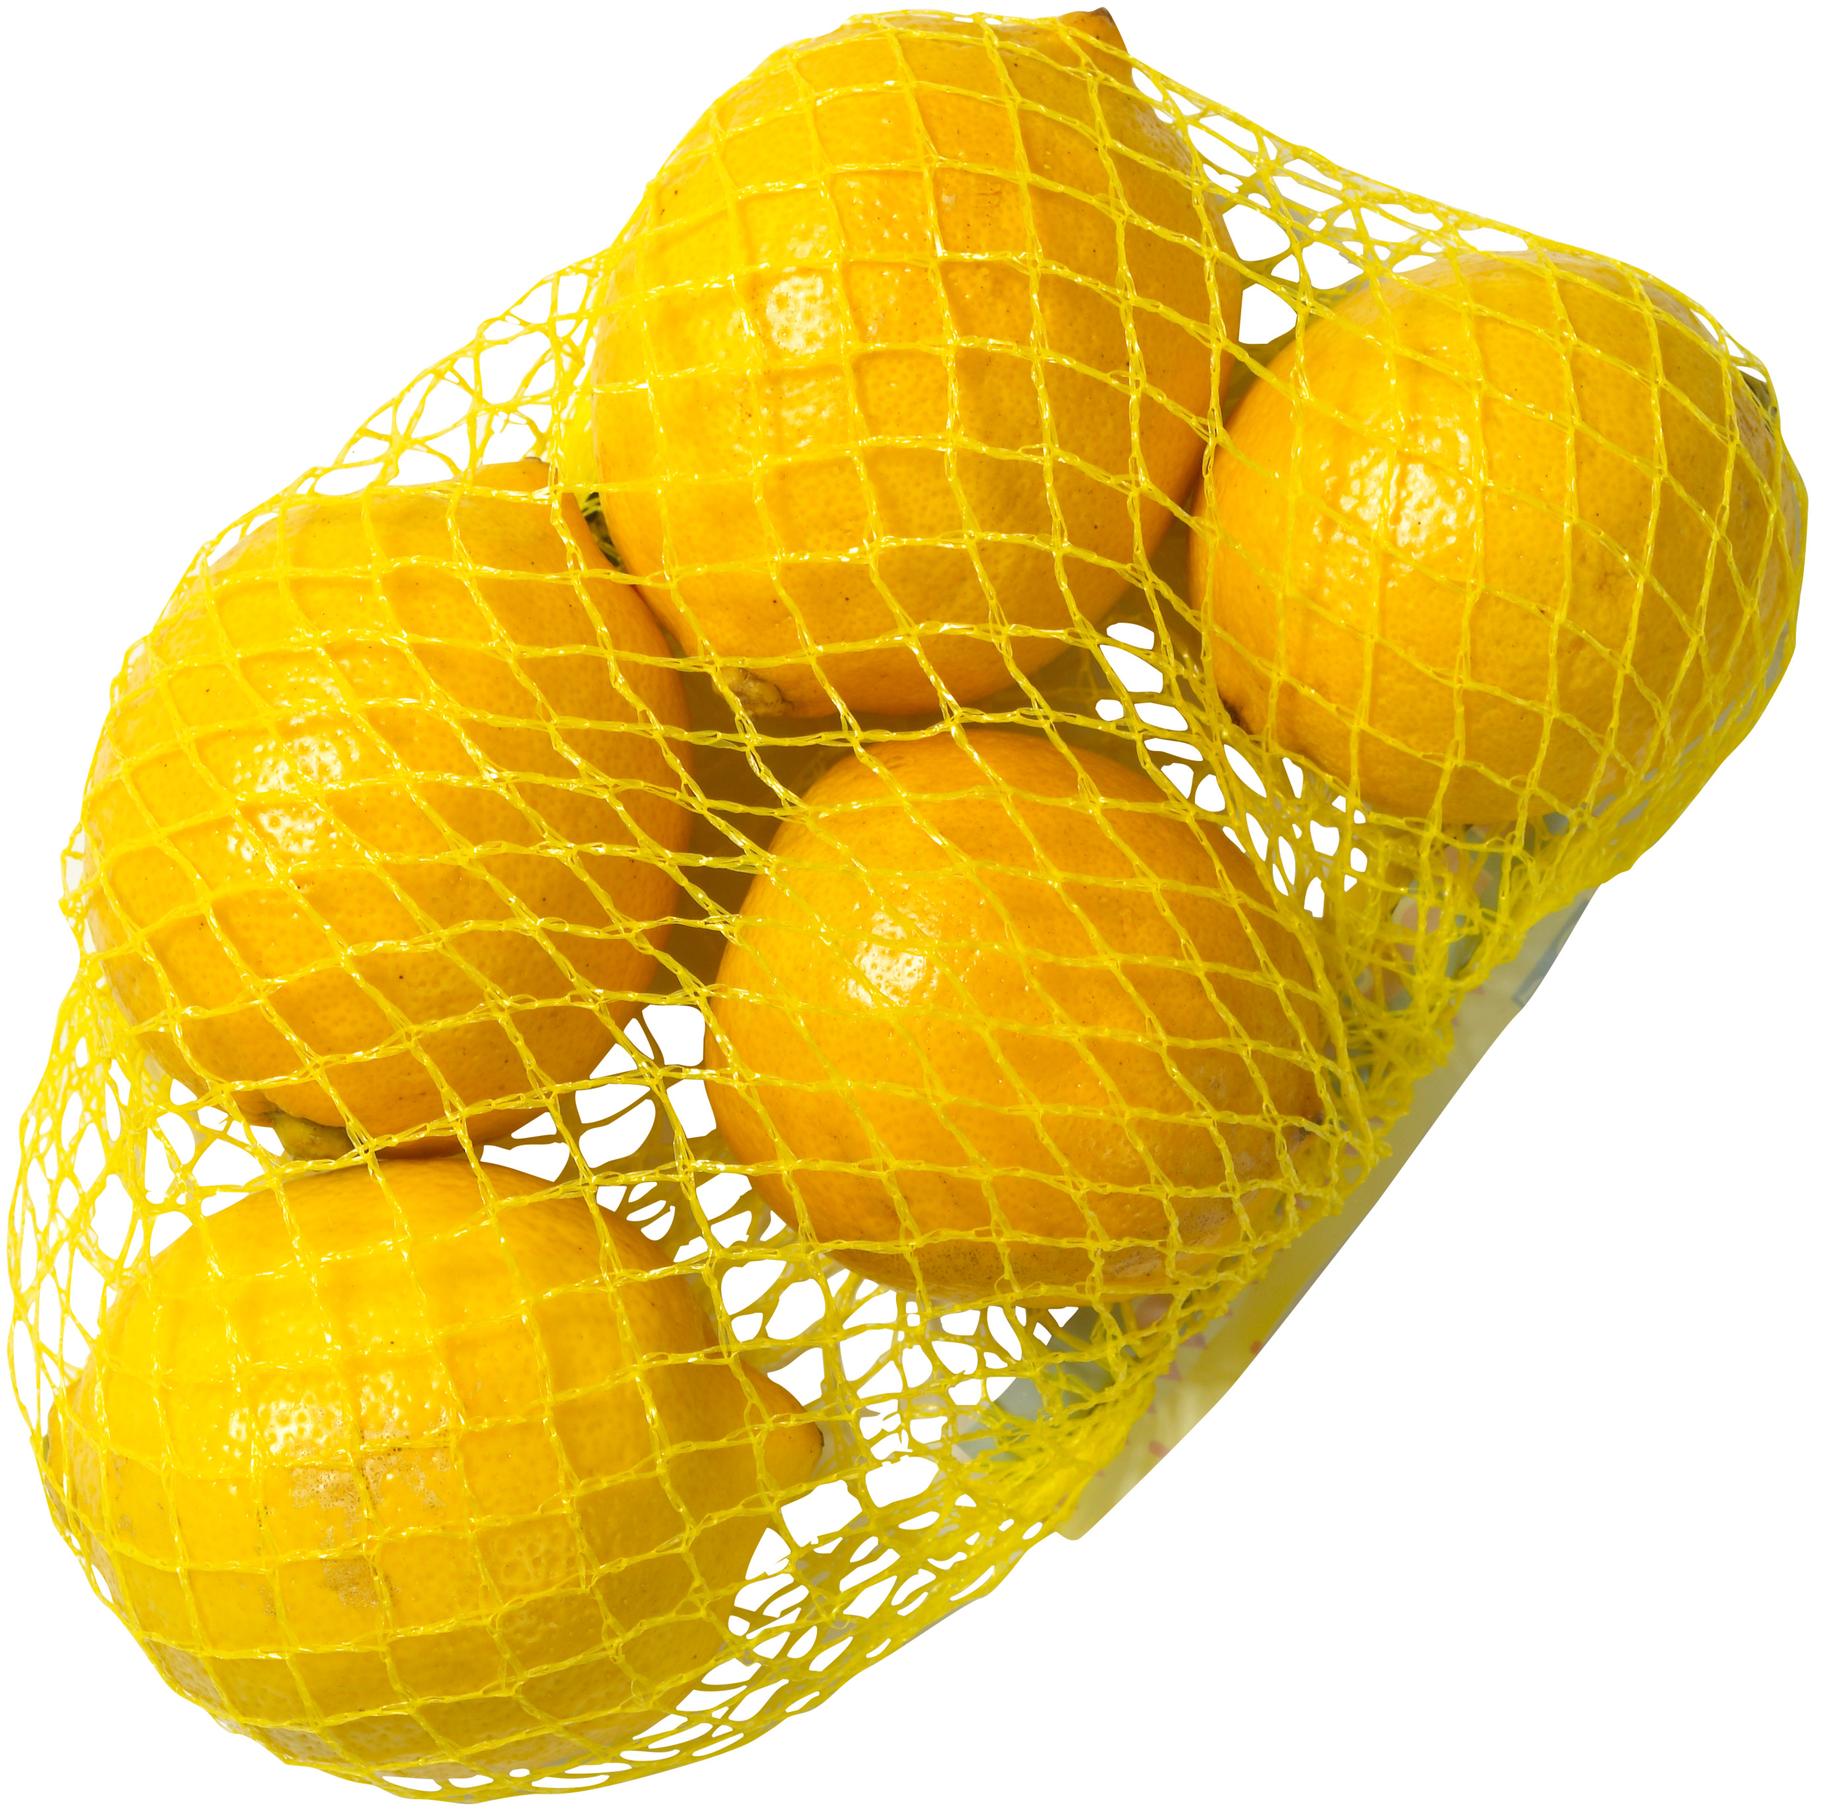 Citron 500 Gr för 14,95 kr på Coop Daglivs